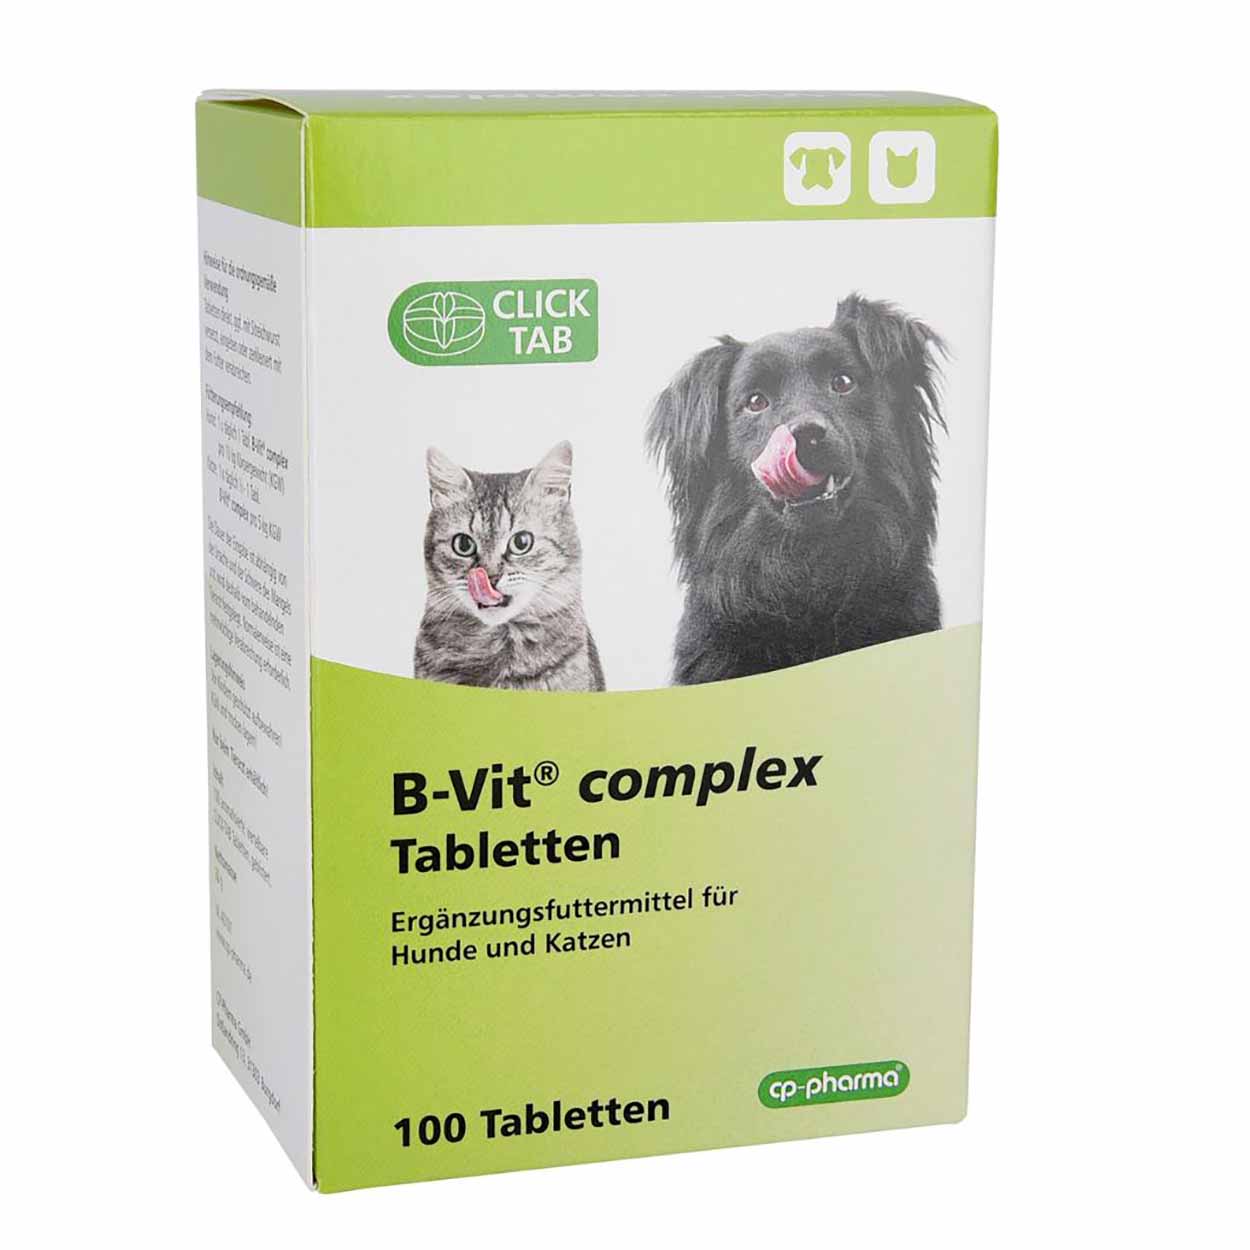 B-Vit complex für | Vitamine, Mineralien